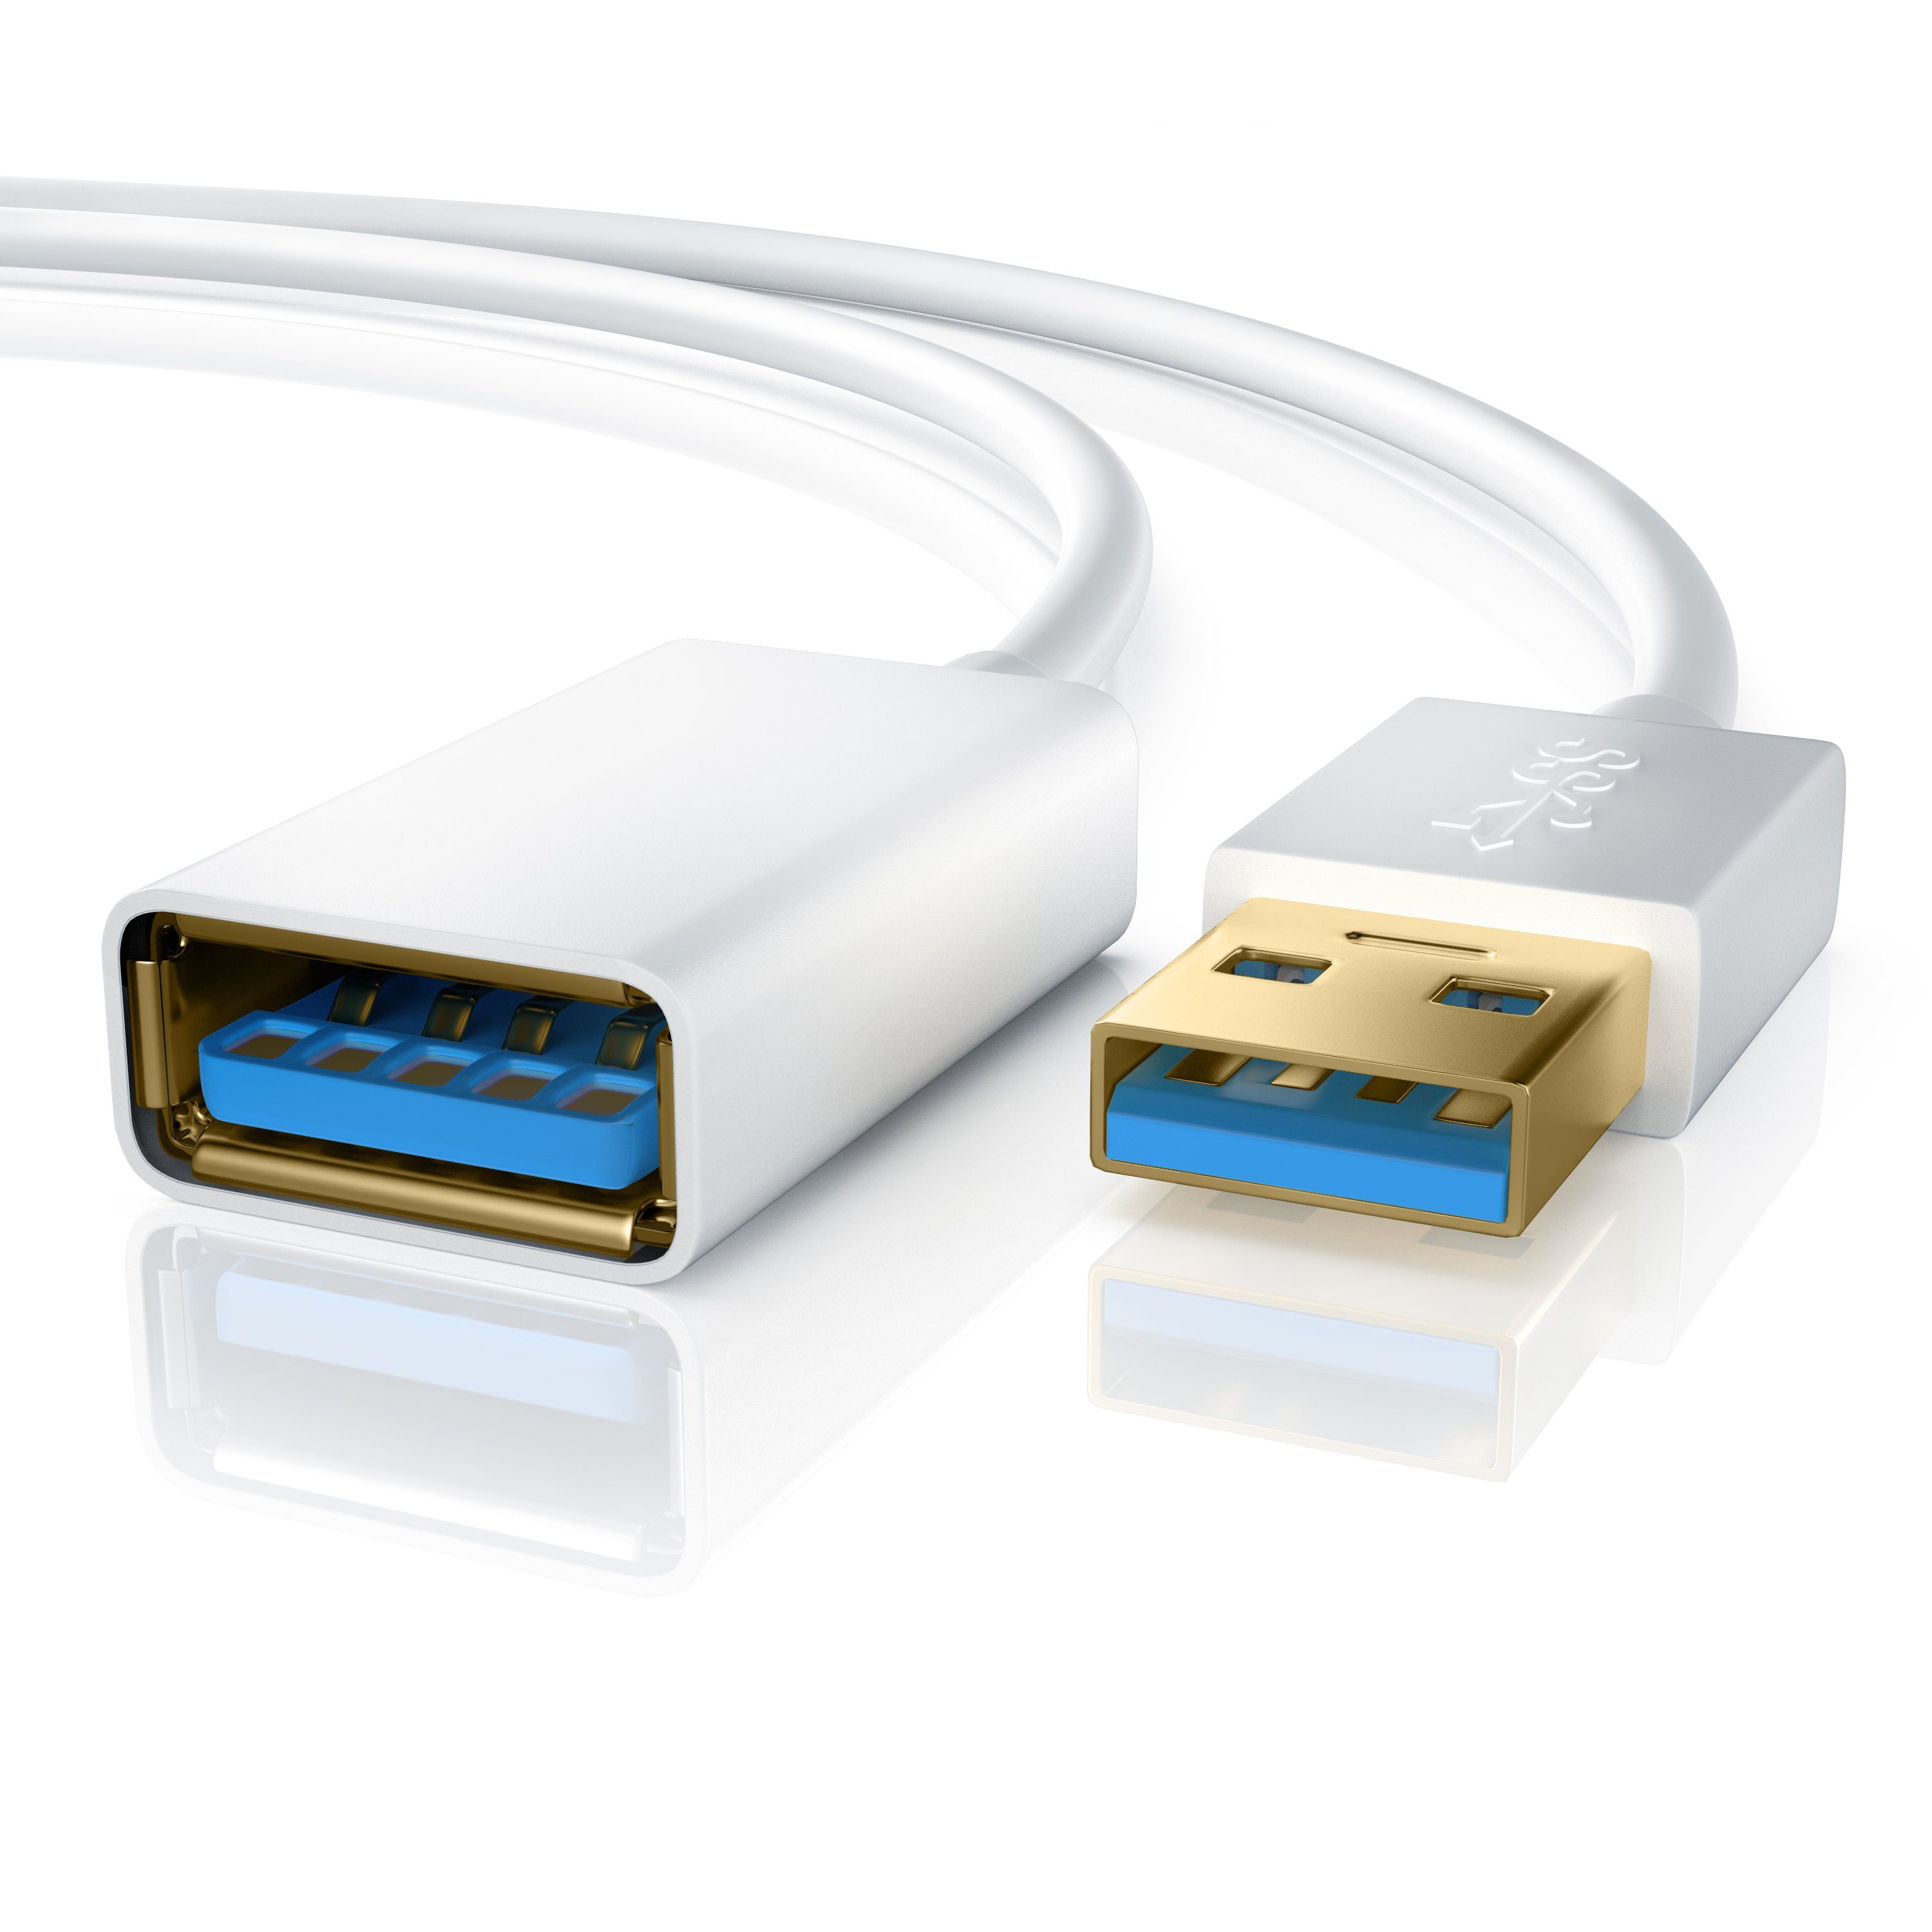 Typ weiß Repeater - Verlängerungskabel, / (100 5Gb/s cm), Speed 1m USB3.0 Verlängerung zu Super USB A bis Primewire 3.0 Kabel